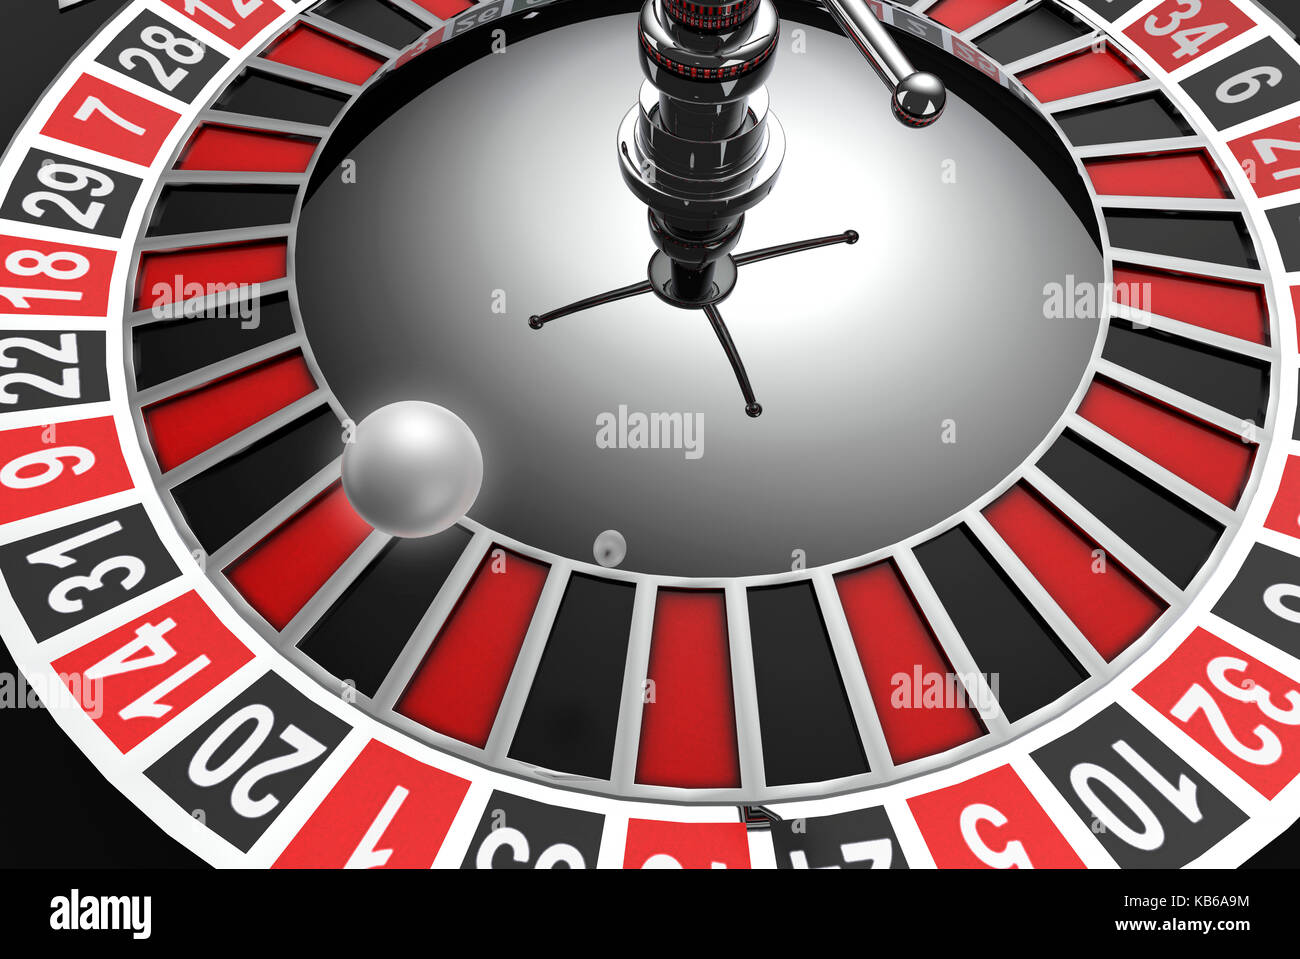 casino game spinning wheel